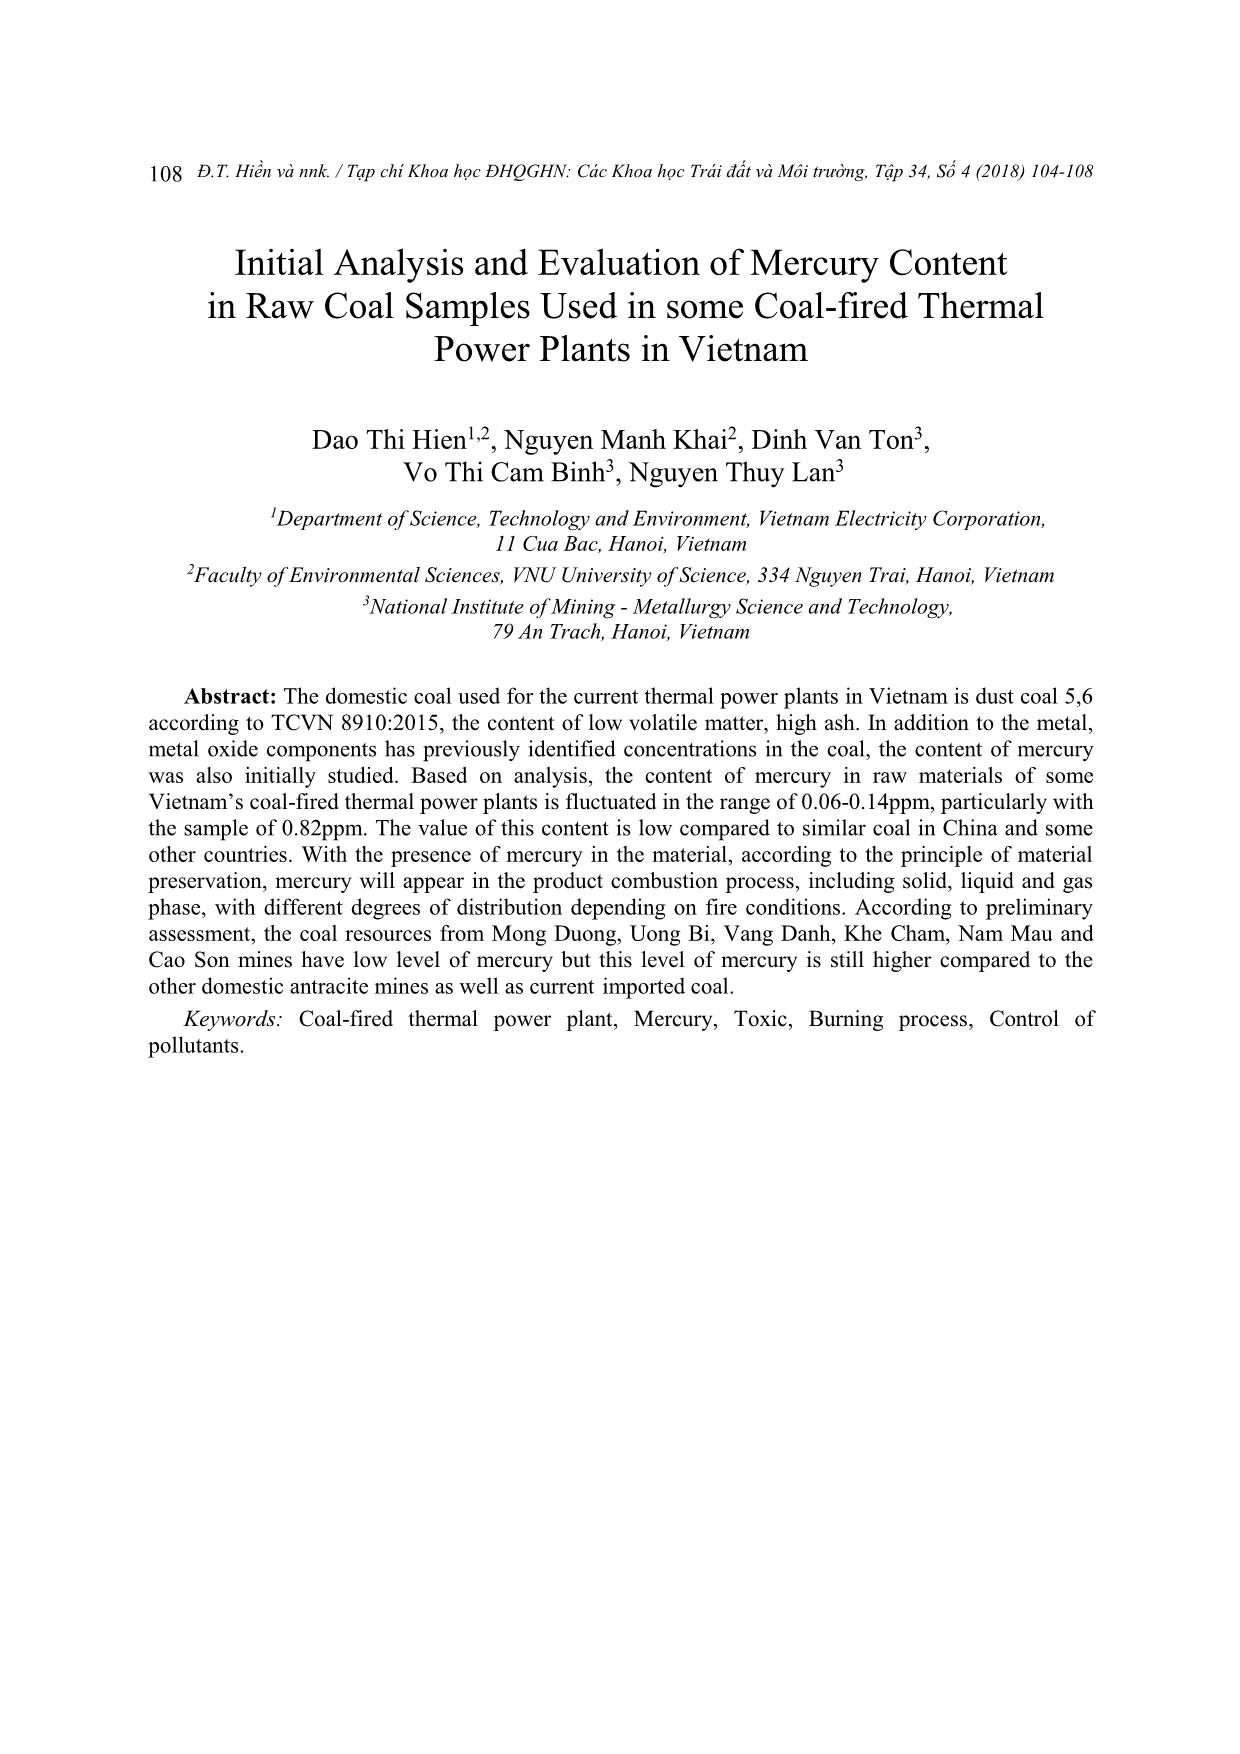 Bước đầu phân tích, đánh giá hàm lượng thủy ngân trong mẫu than nguyên liệu sử dụng tại một số nhà máy nhiệt điện ở Việt Nam trang 5